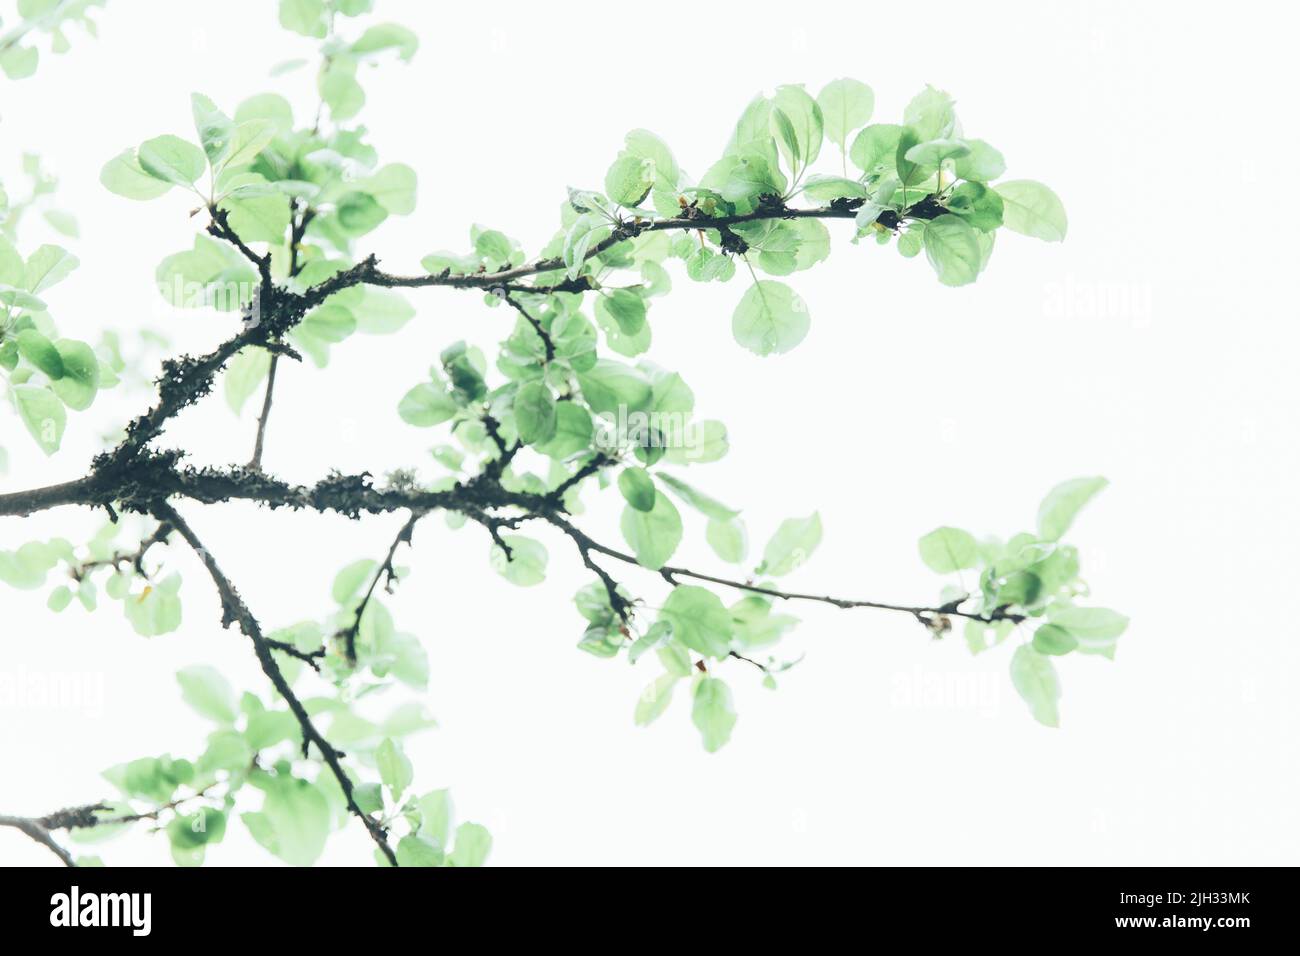 Üppiges grünes Blatt, Reinheit Natur Hintergrund. Grüne Blätter auf Ulme. Natur Frühling und Sommer Banner. Pflanzen gegen den blauen Himmel Konzept. Bäume Stockfoto